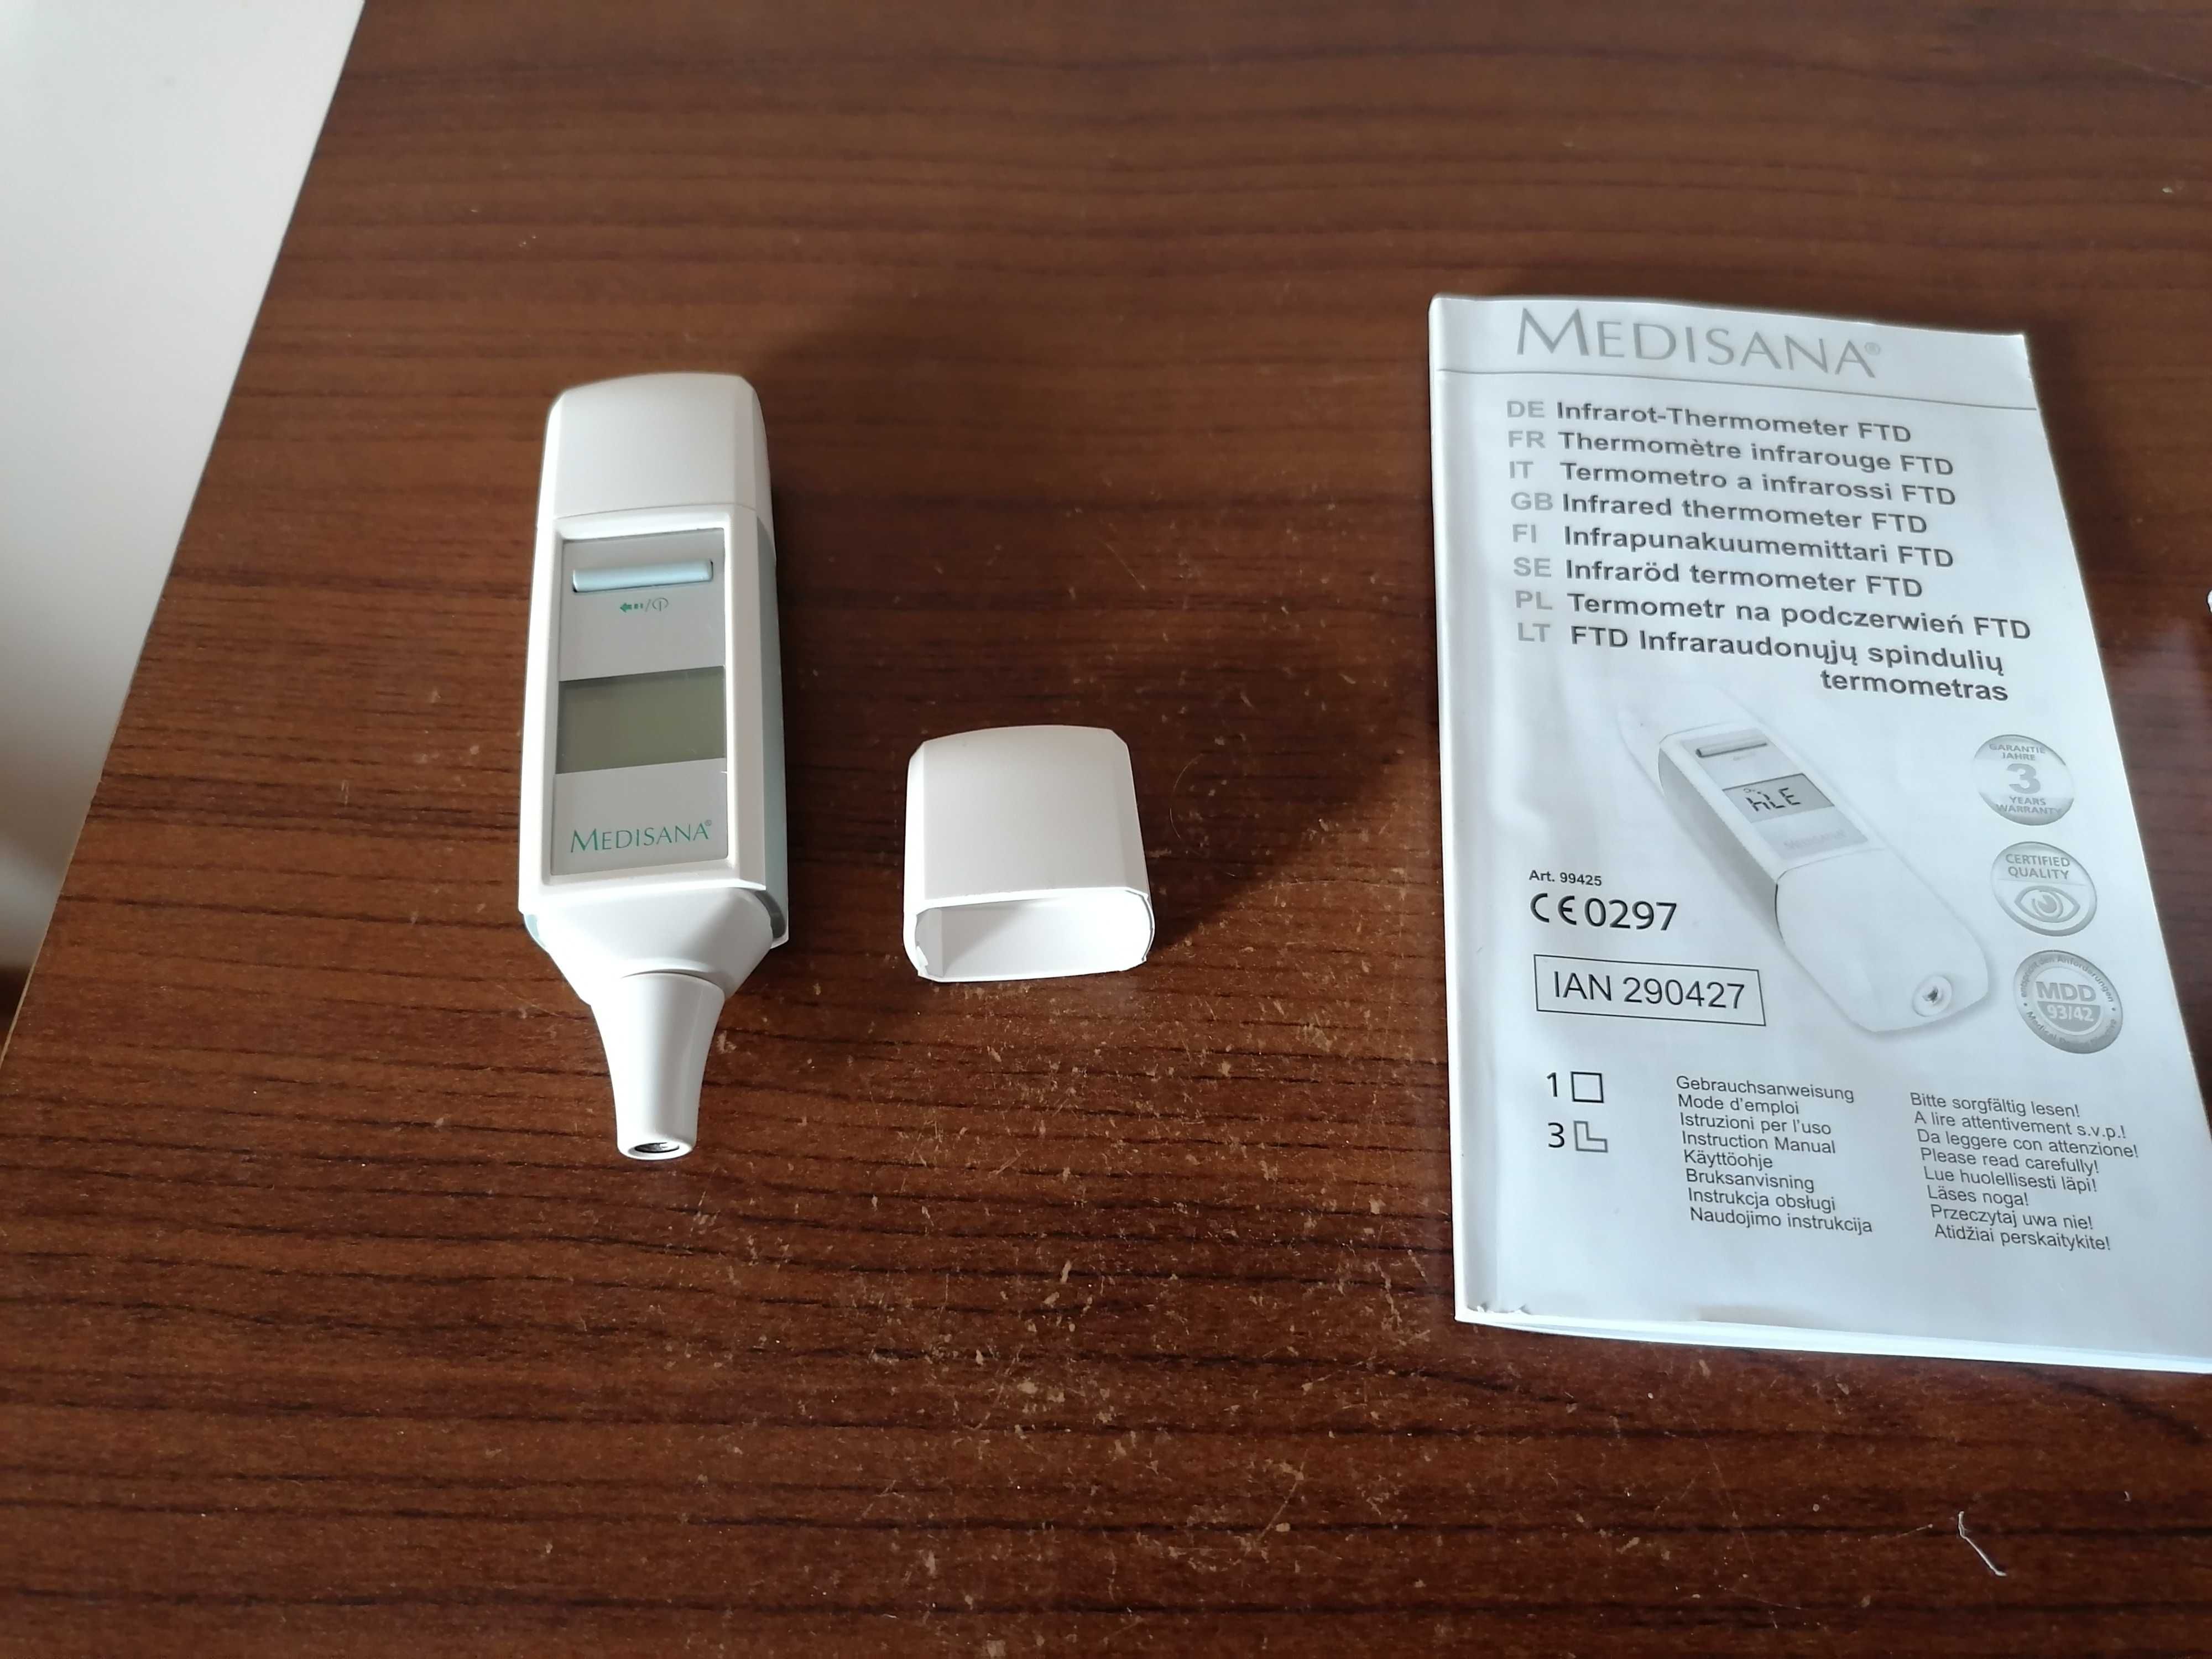 Bezdotykowy termometr "Medisana" w pudełku